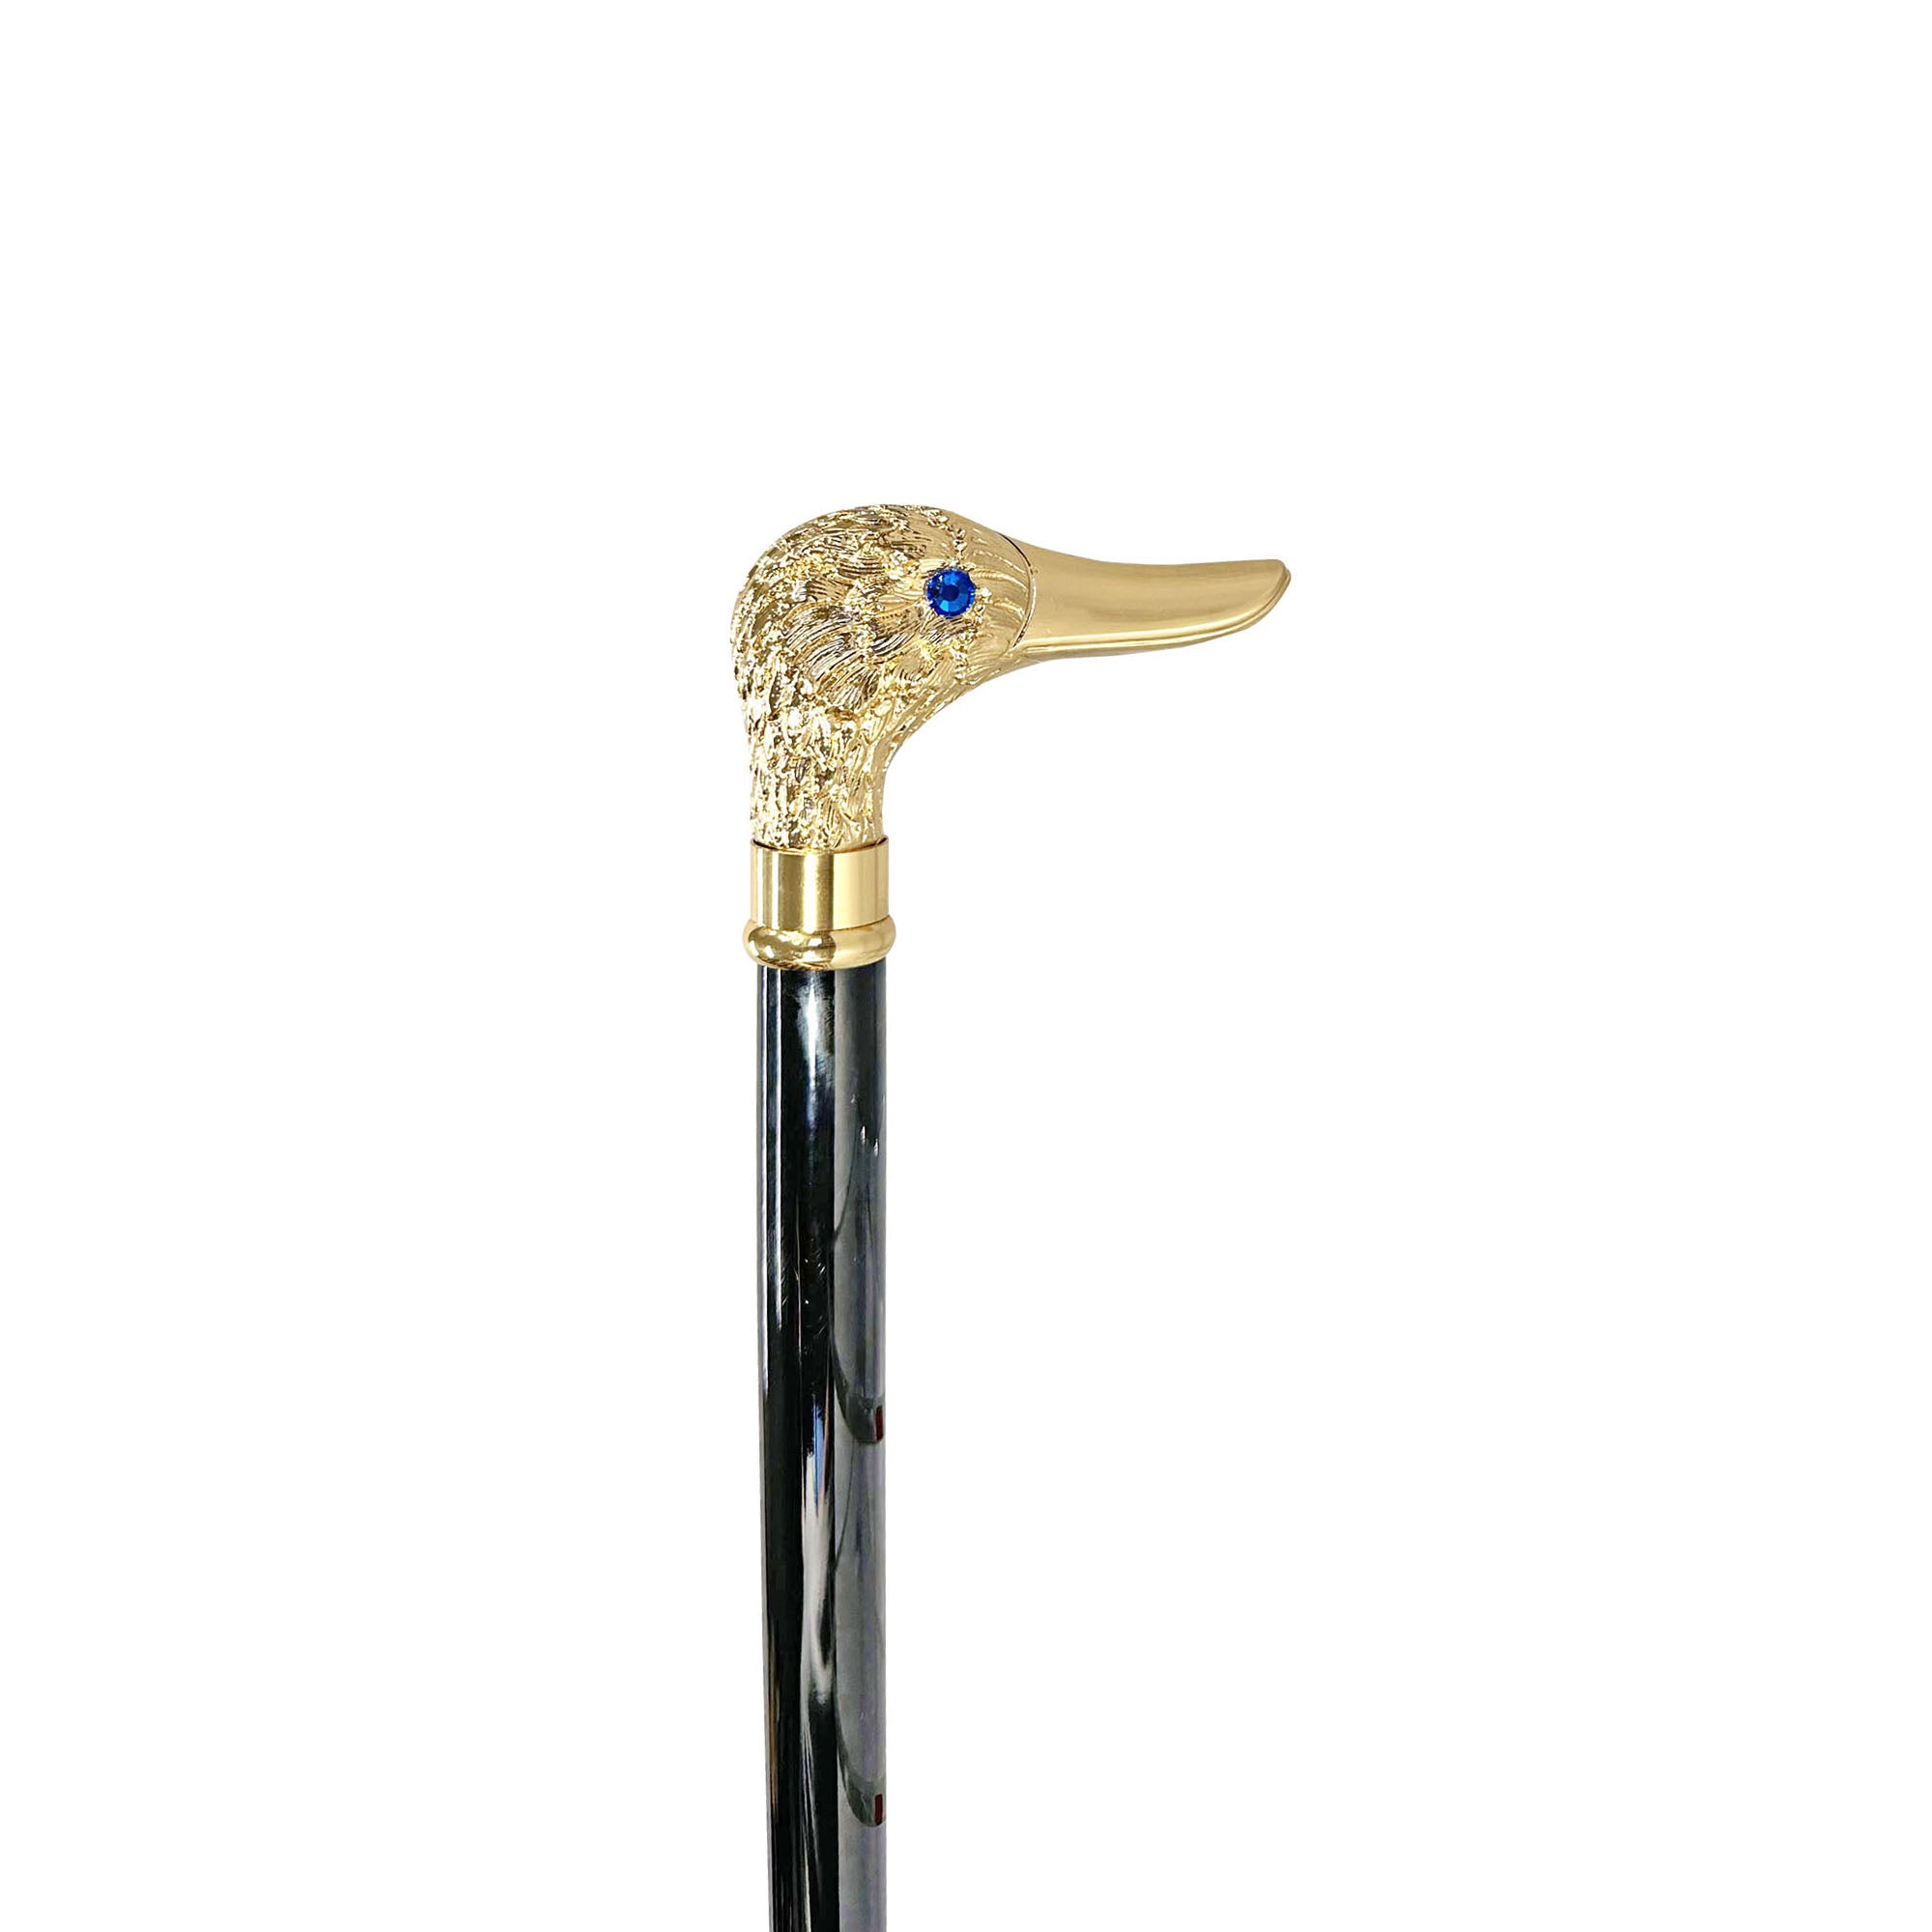 Handmade Duck Walking stick - 24K gold-plated